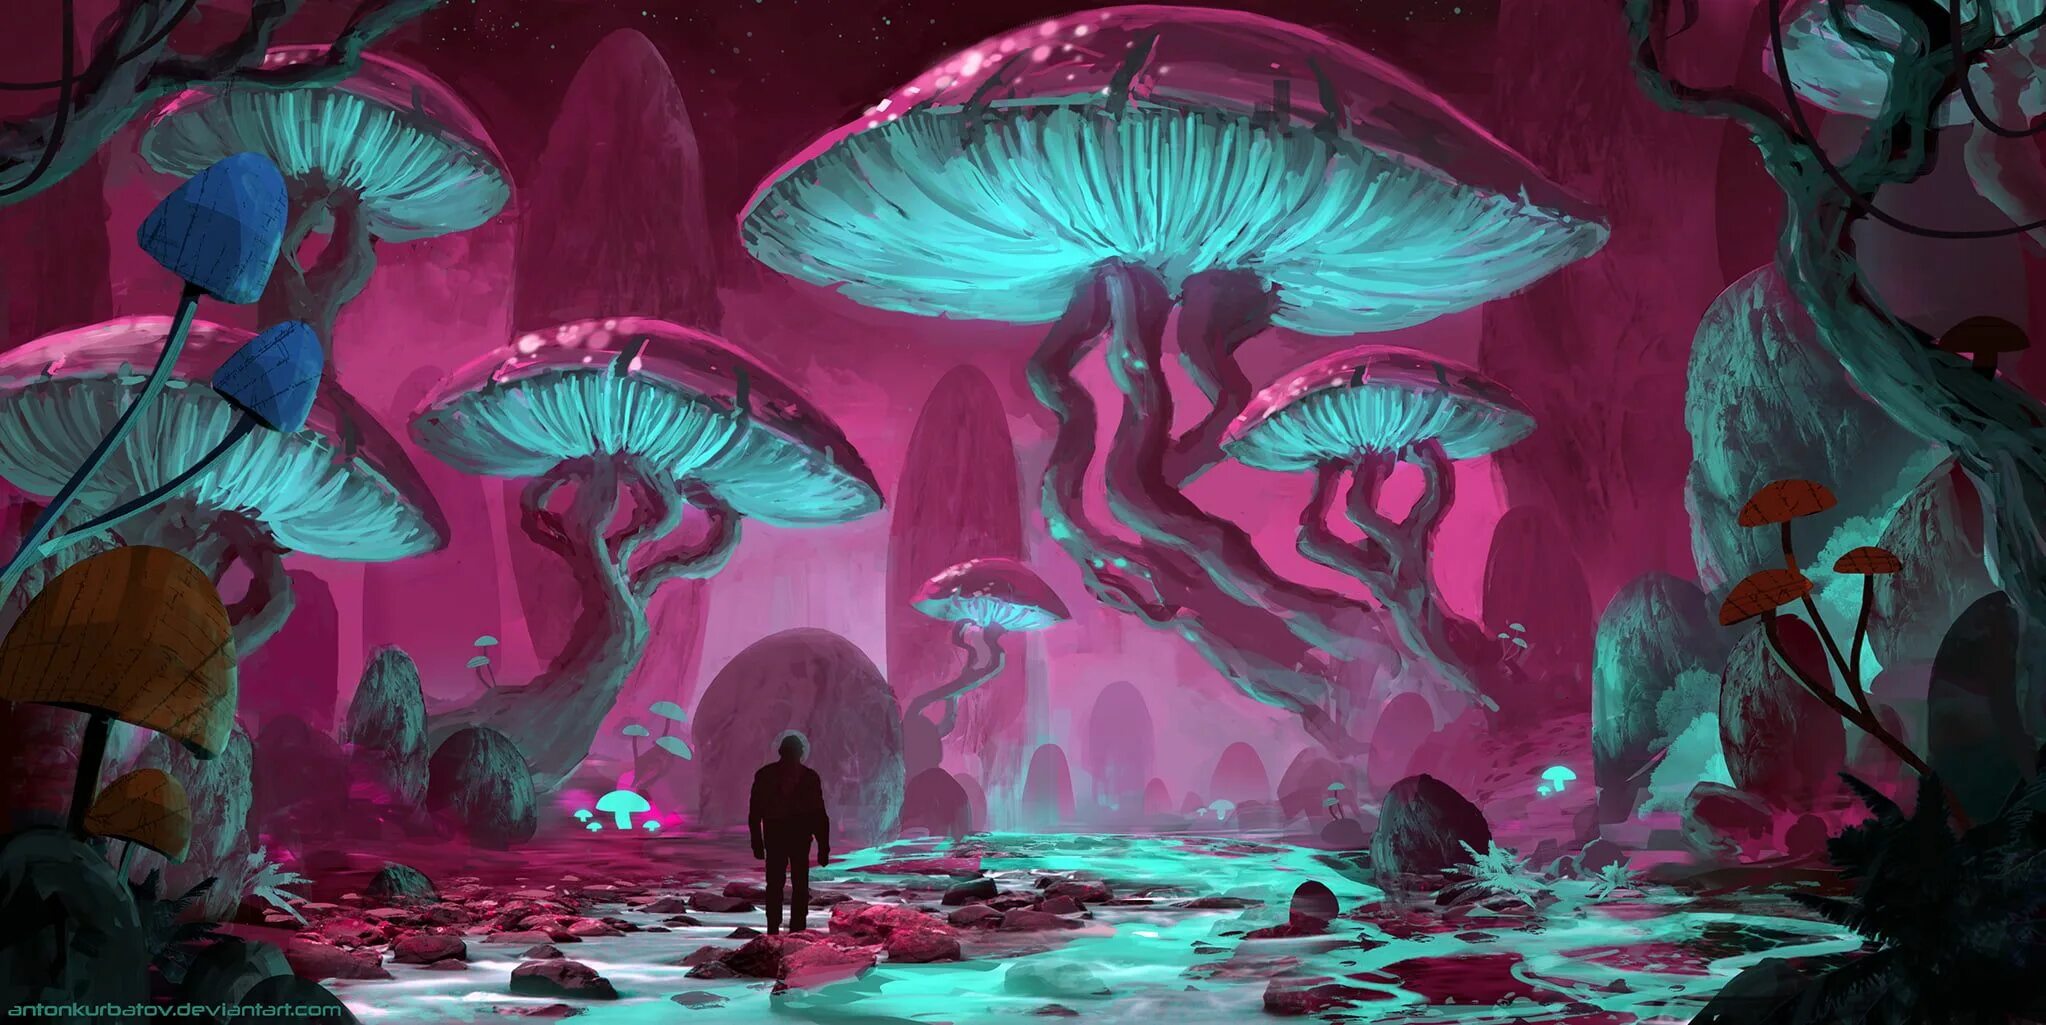 Digital hallucination or3o. Инопланетные грибы. Грибы фэнтези. Инопланетные растения. Грибы арт фэнтези.